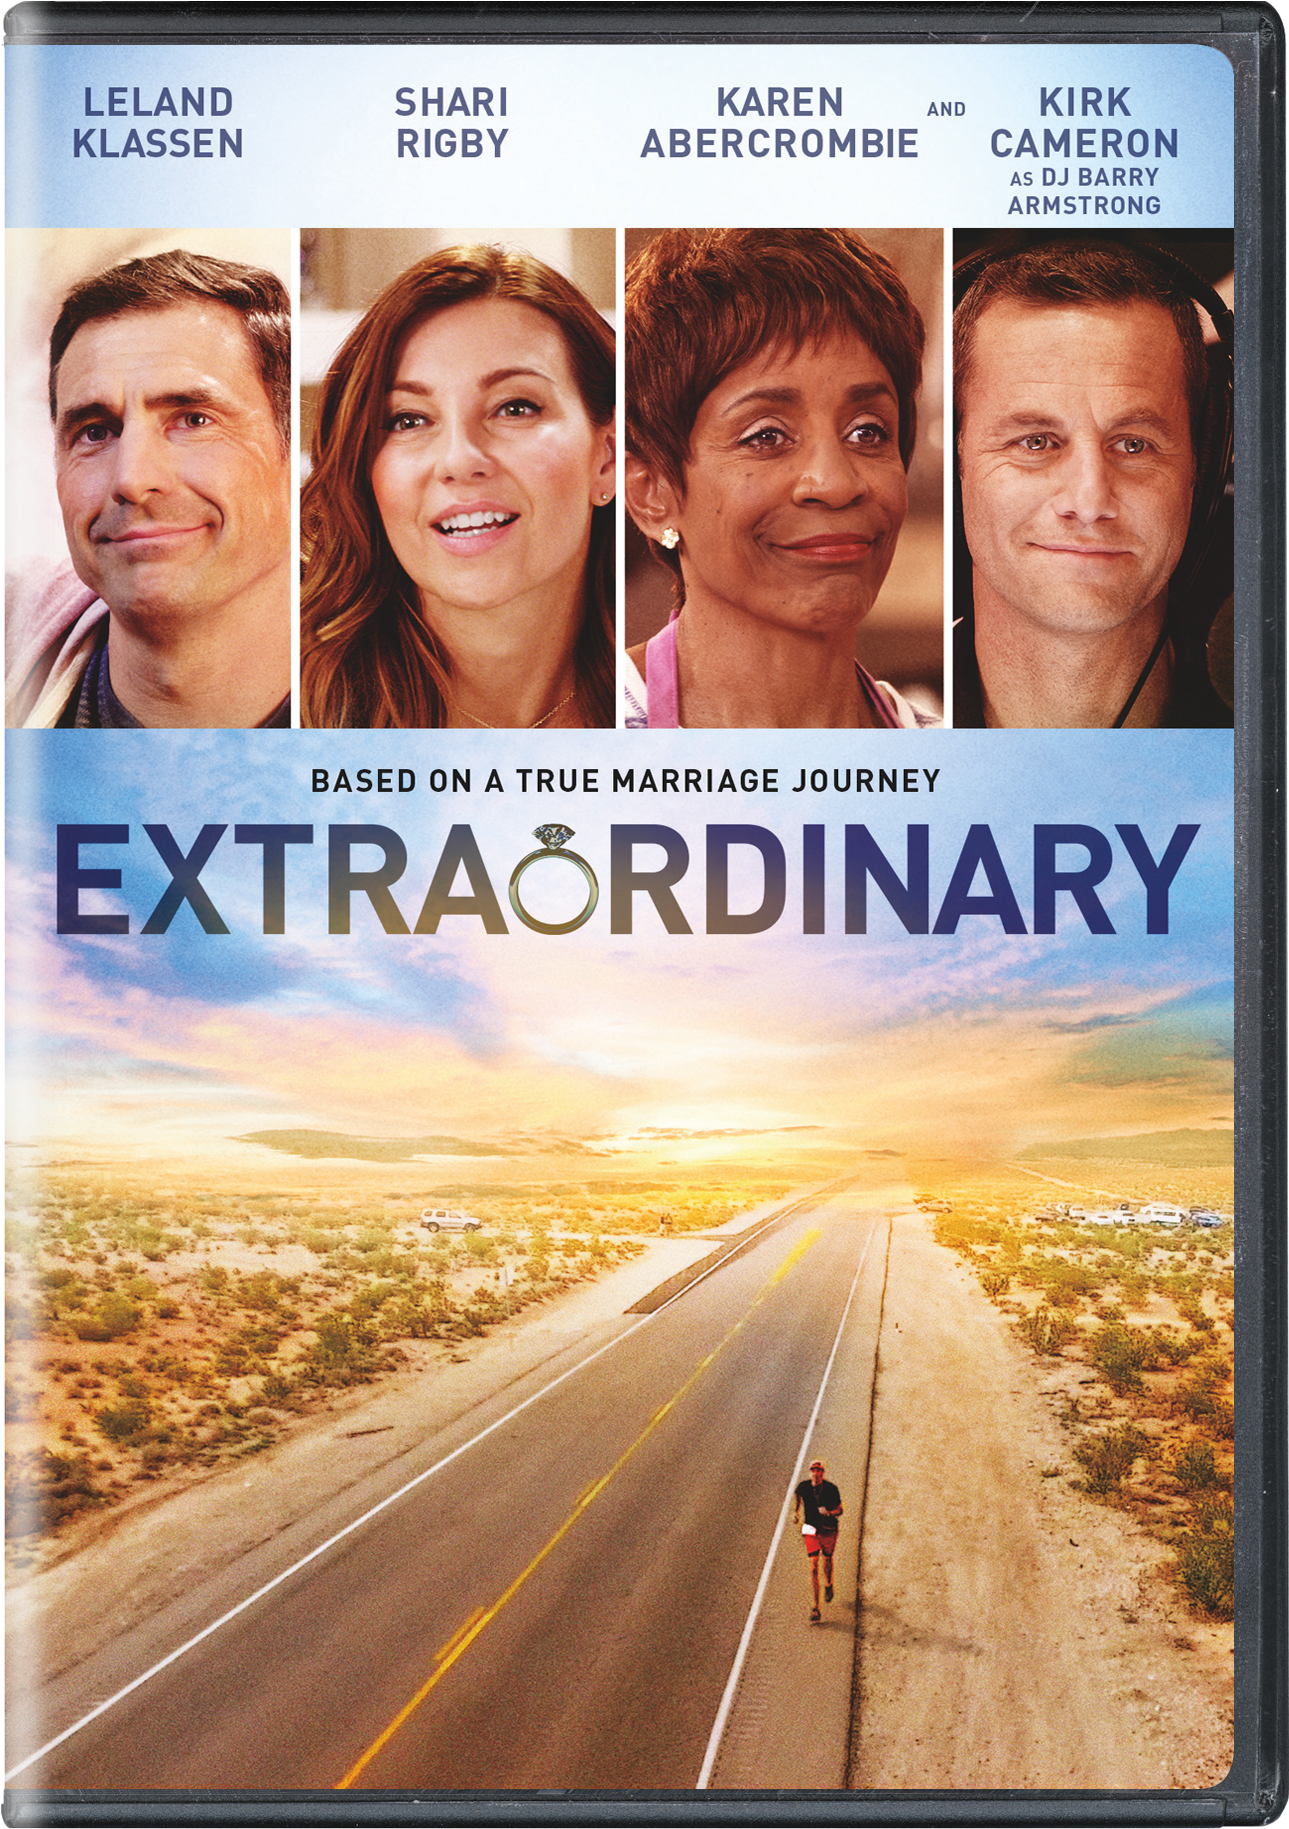 Extraordinary - DVD [ 2017 ]  - Drama Movies On DVD - Movies On GRUV